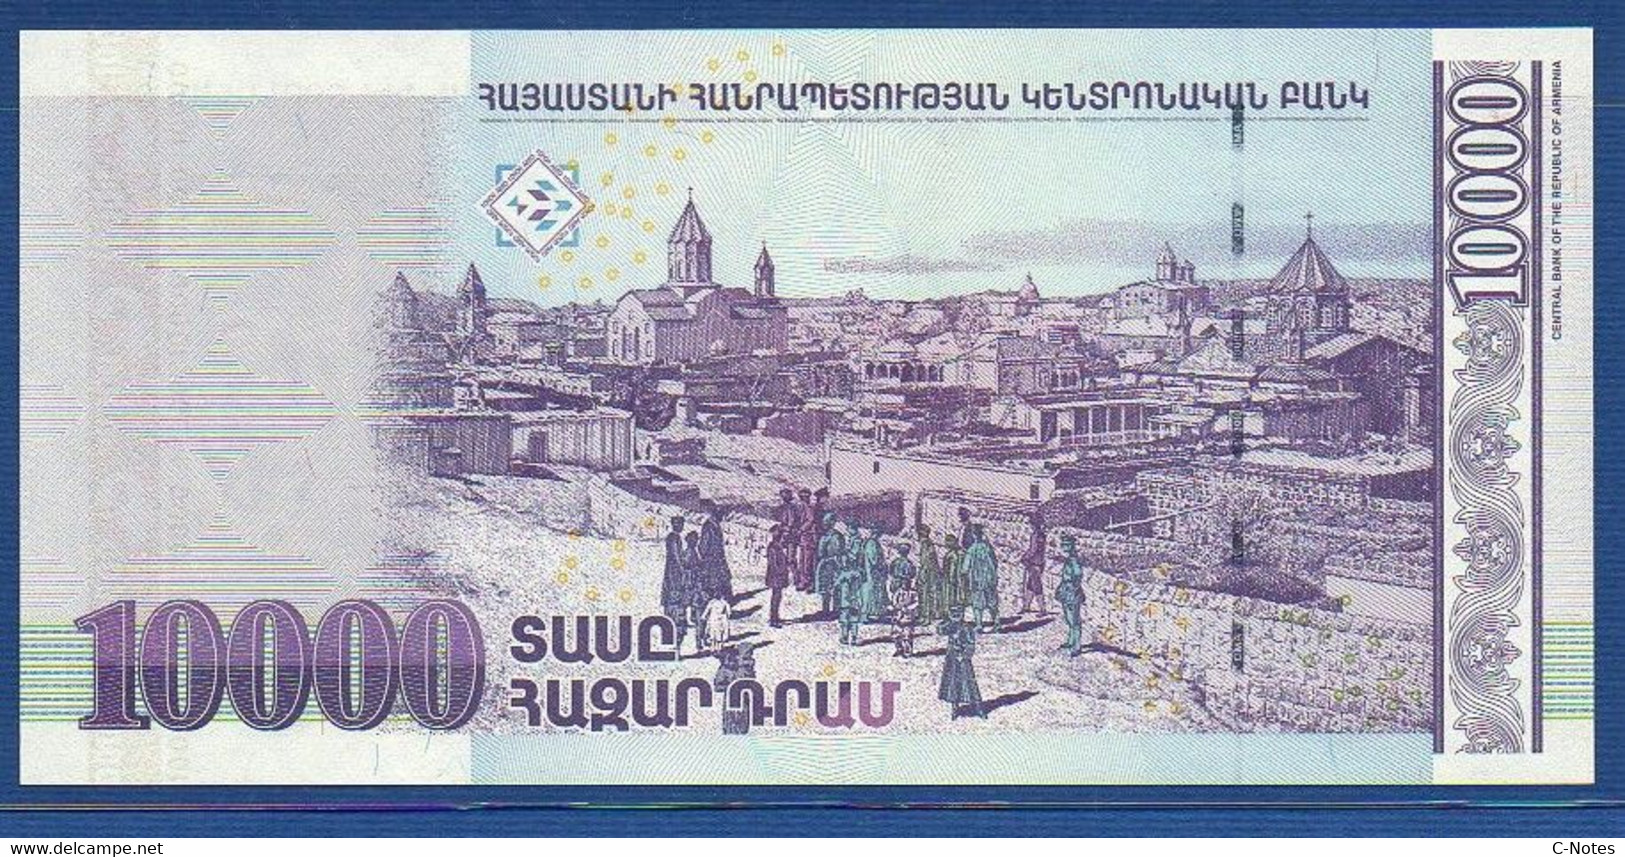 ARMENIA - P.52c – 10.000 10000 Dram 2008 UNC, Serie 14917472 - Armenia